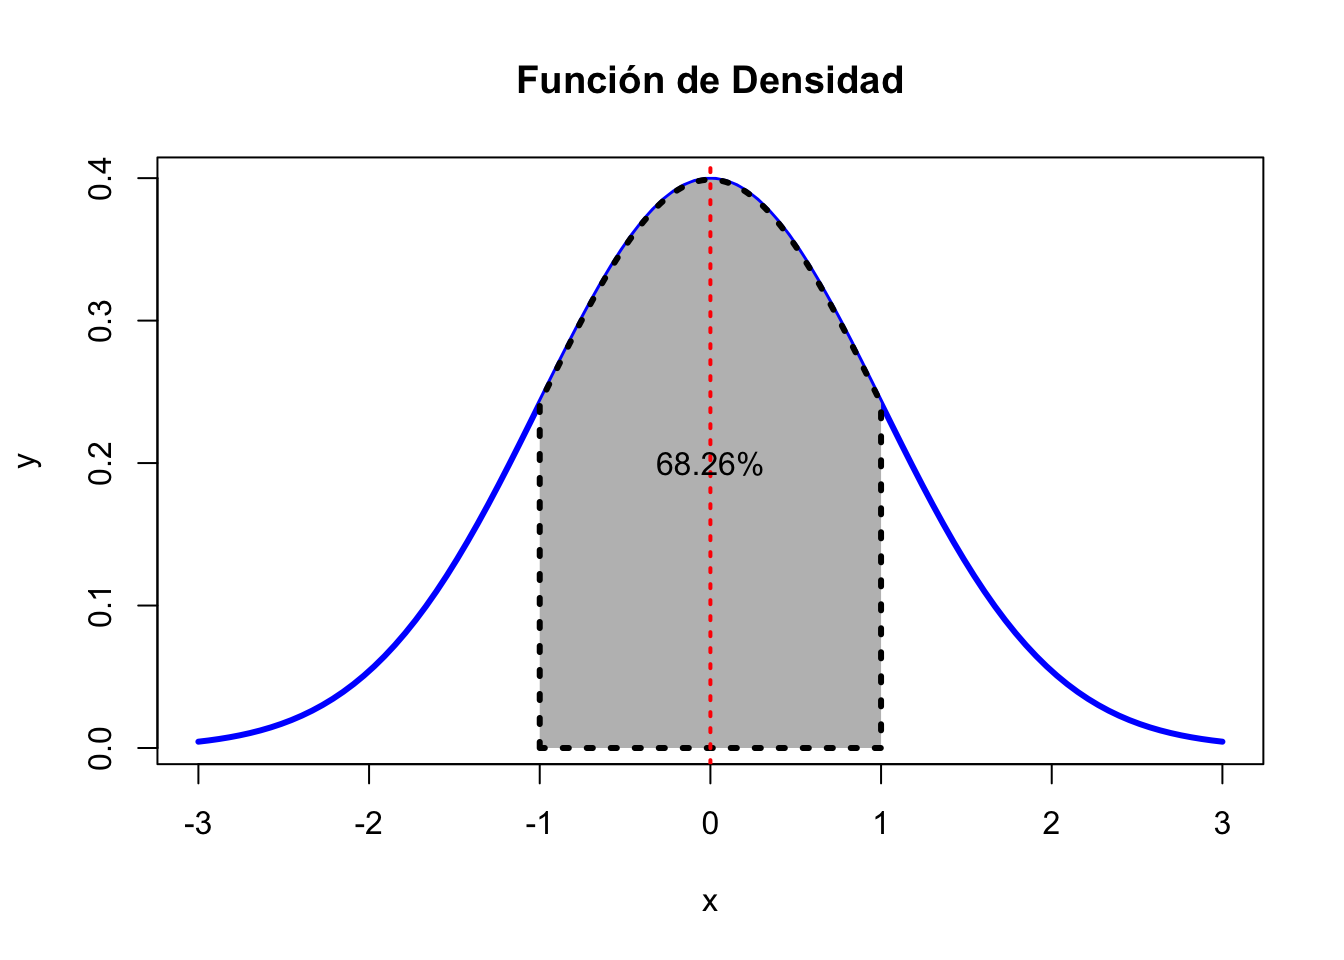 Función de densidad normal. El eje x etiqueta la distancia de las desviaciones estándares (sd) respecto a la media (mu=0).